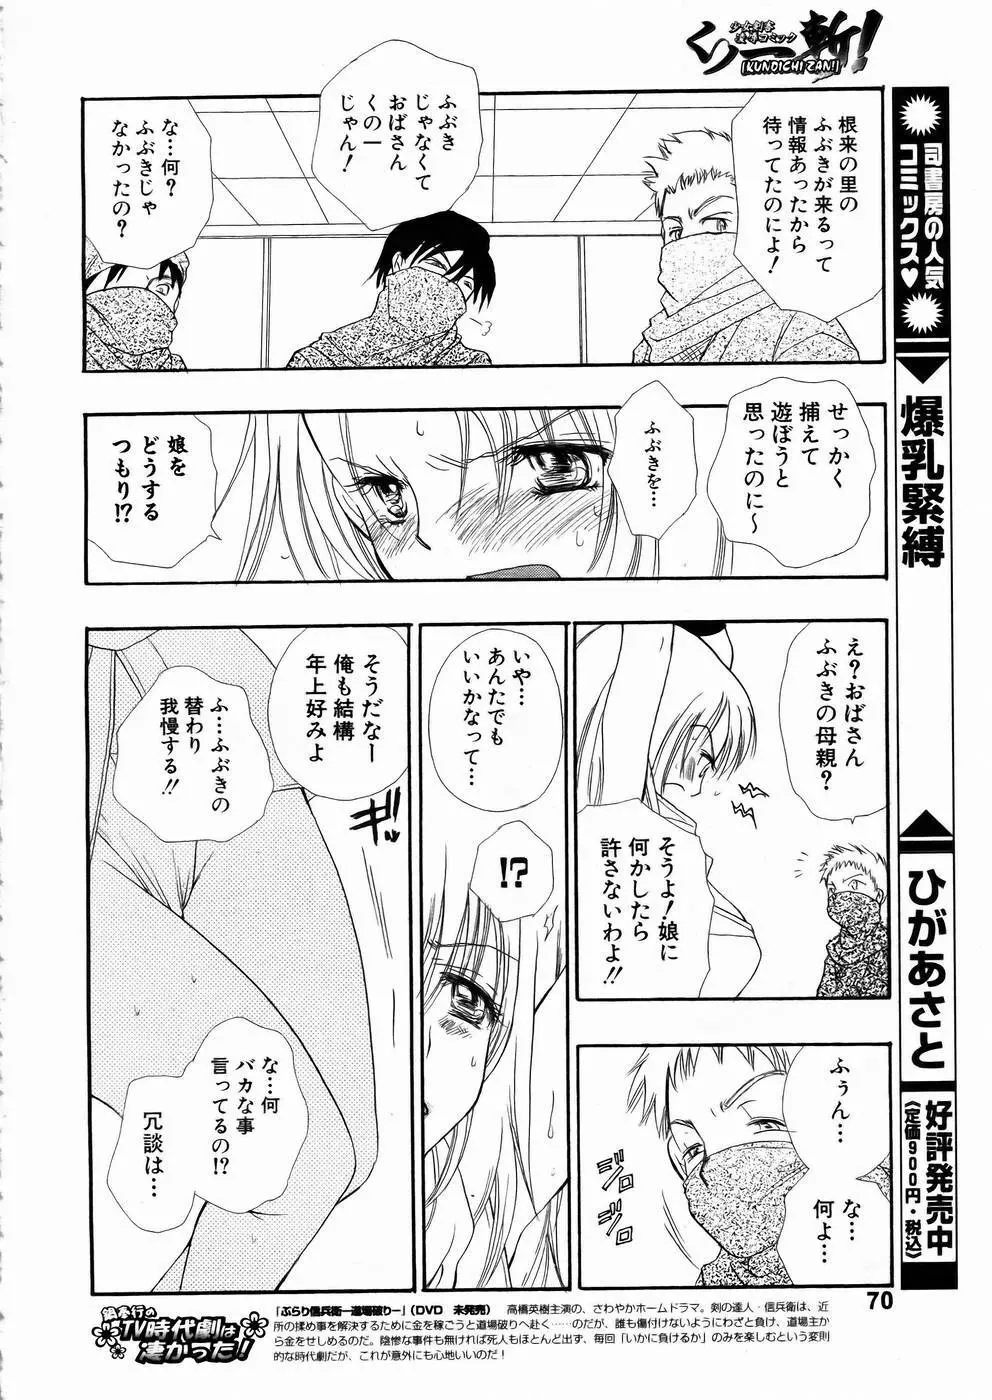 少女剣客凌辱コミック Vol.01 くノ一斬! 67ページ